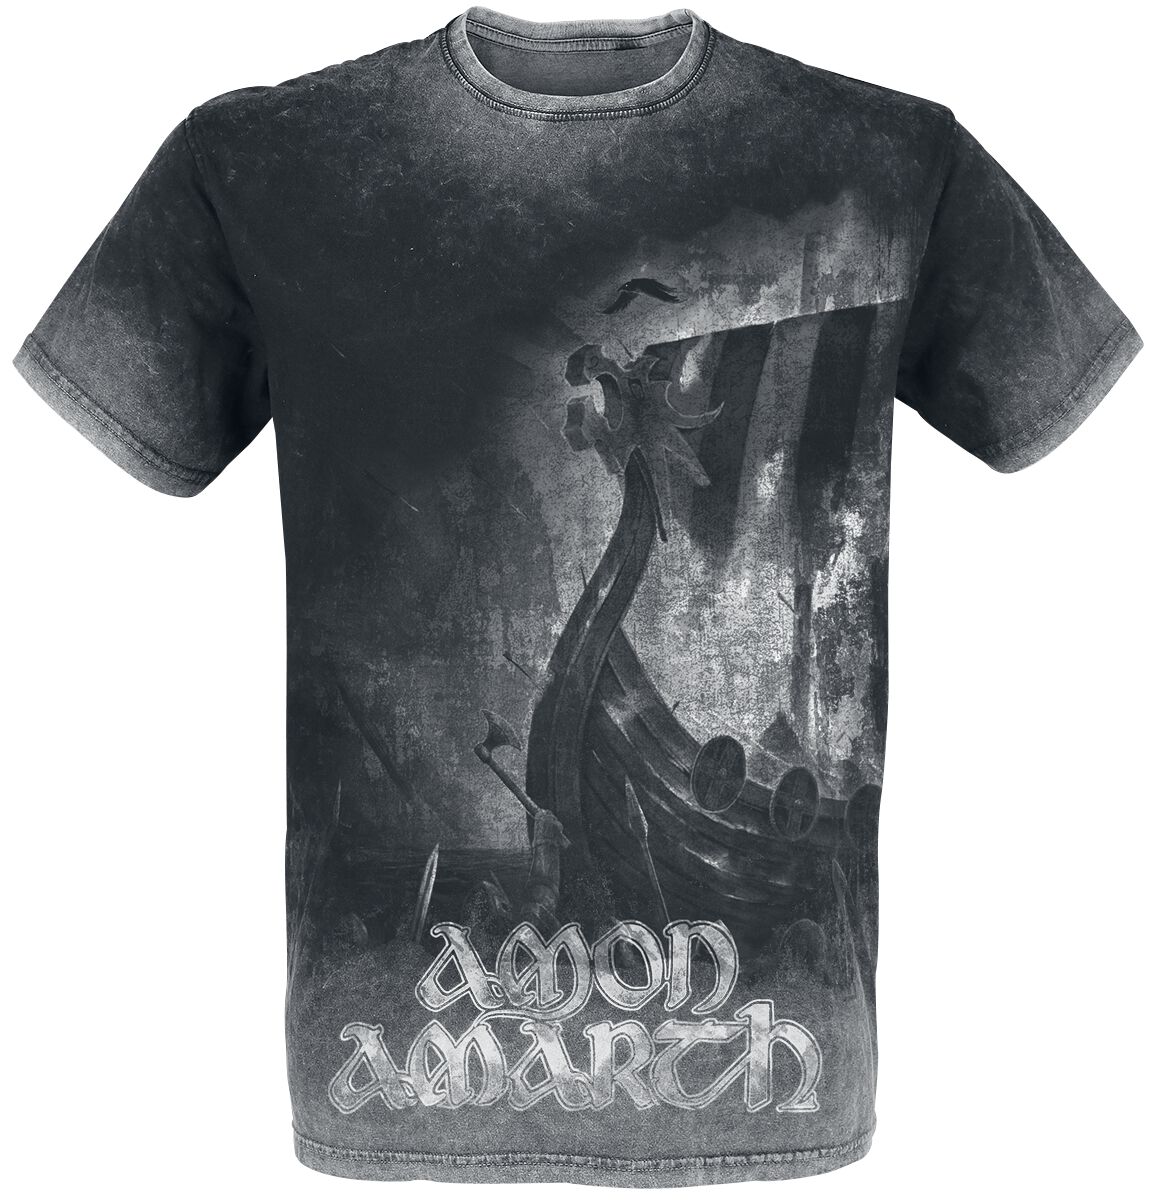 Amon Amarth T-Shirt - One Thousand Burning Arrows - M bis 4XL - für Männer - Größe M - charcoal  - EMP exklusives Merchandise!